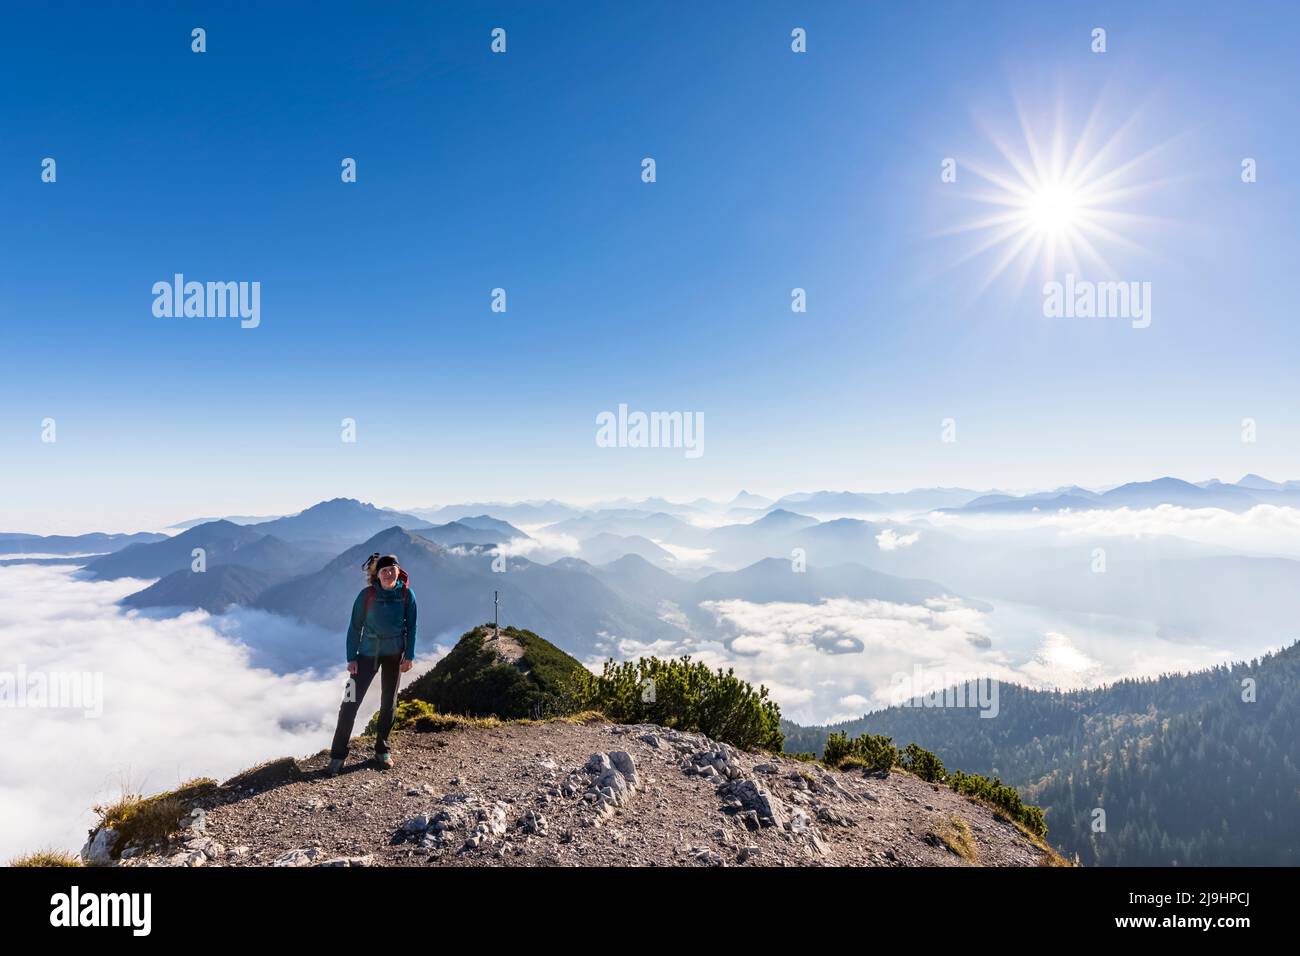 Germania, Baviera, sole che brilla su una donna escursionista in piedi sulla cima della montagna con la nebbia fitta e la vetta del monte Herzogstand sullo sfondo Foto Stock